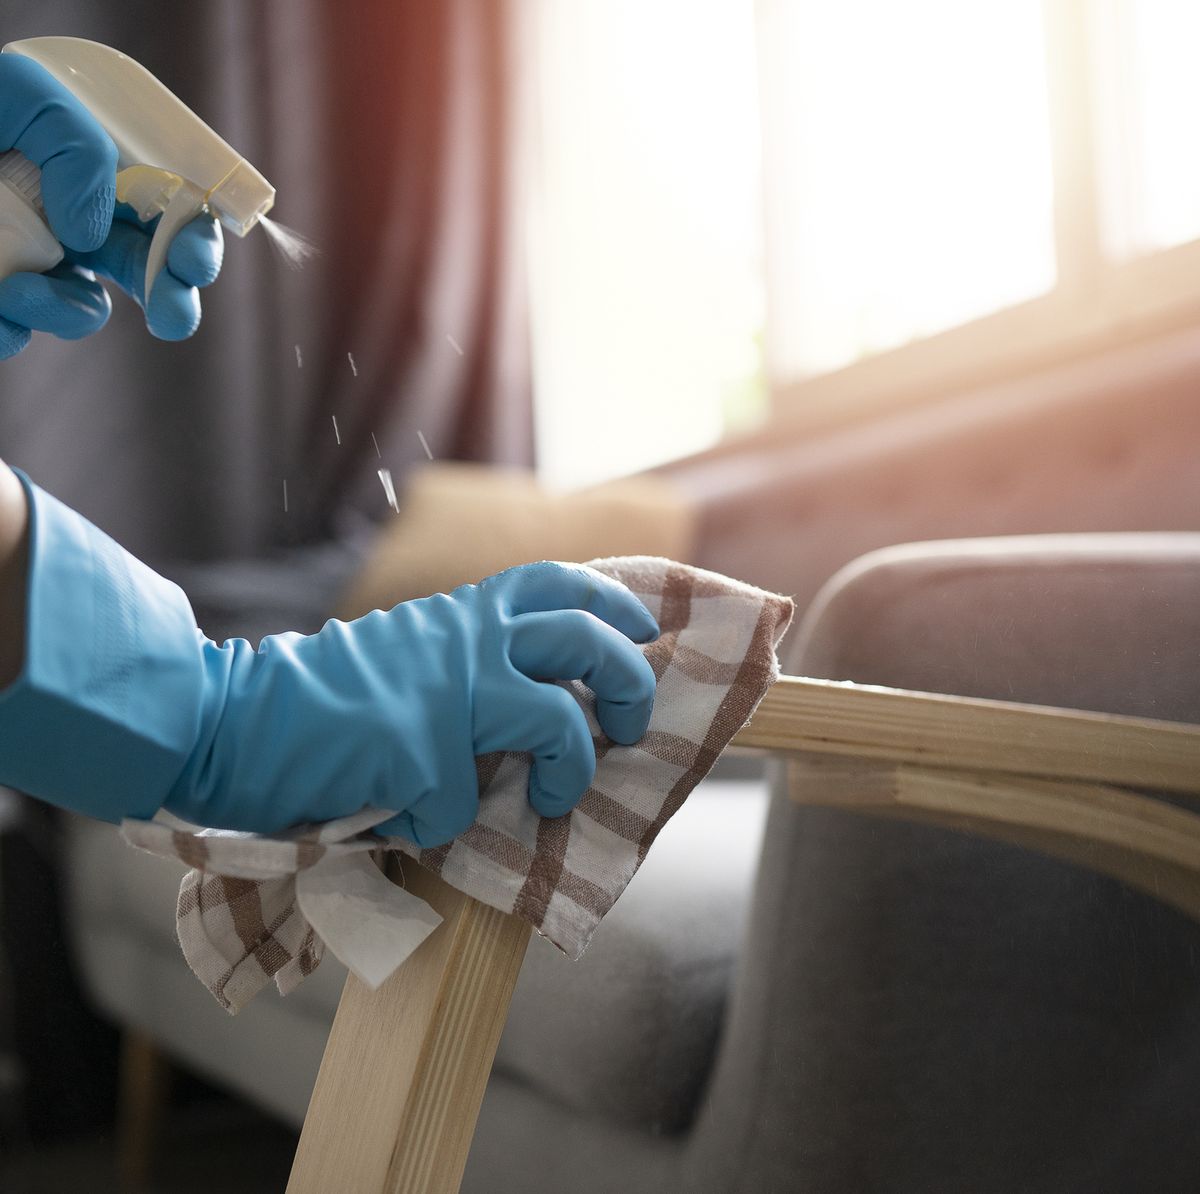 ERRORES LIMPIEZA HOGAR  Mitos de la limpieza del hogar que son